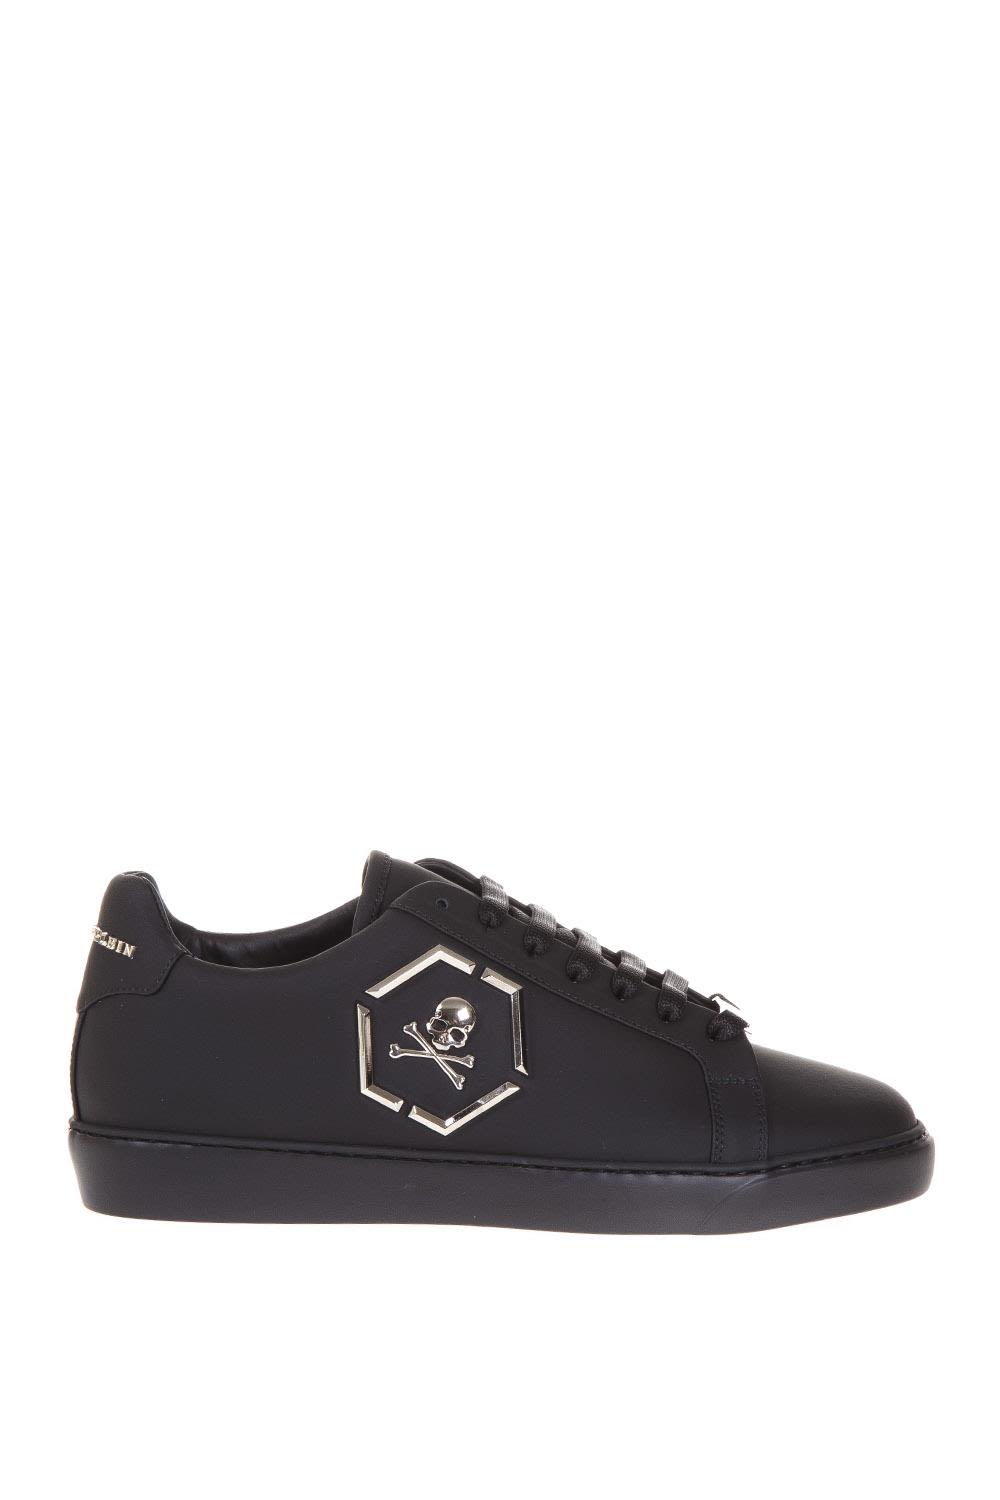 PHILIPP PLEIN Hexagonal Skull Logo Sneakers in Black | ModeSens